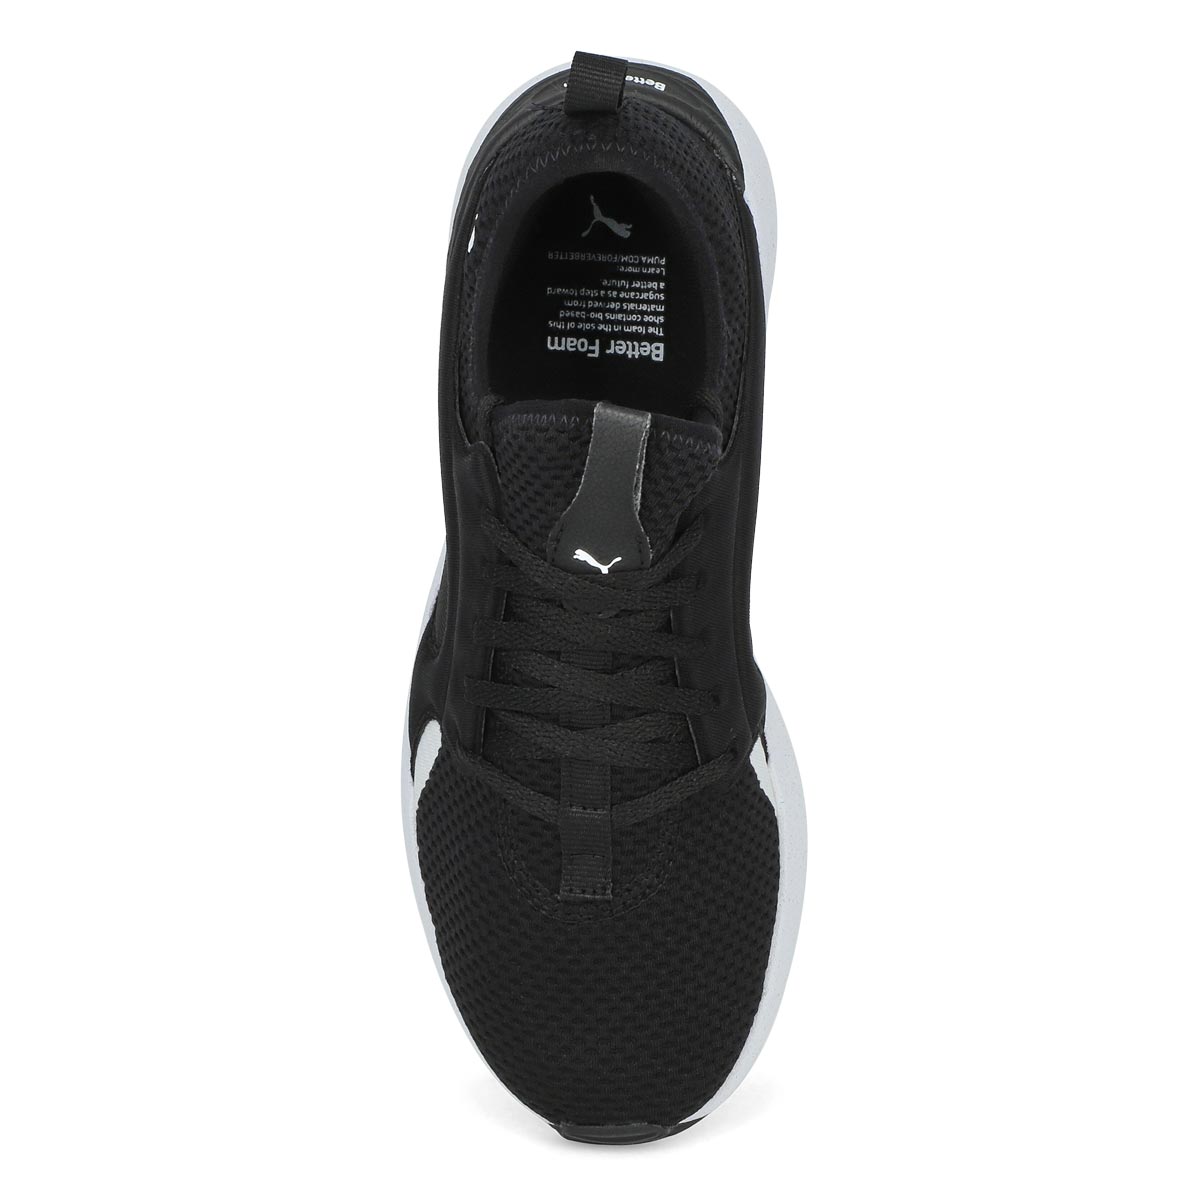 Women's Better Foam Adore Sneaker - Black/White